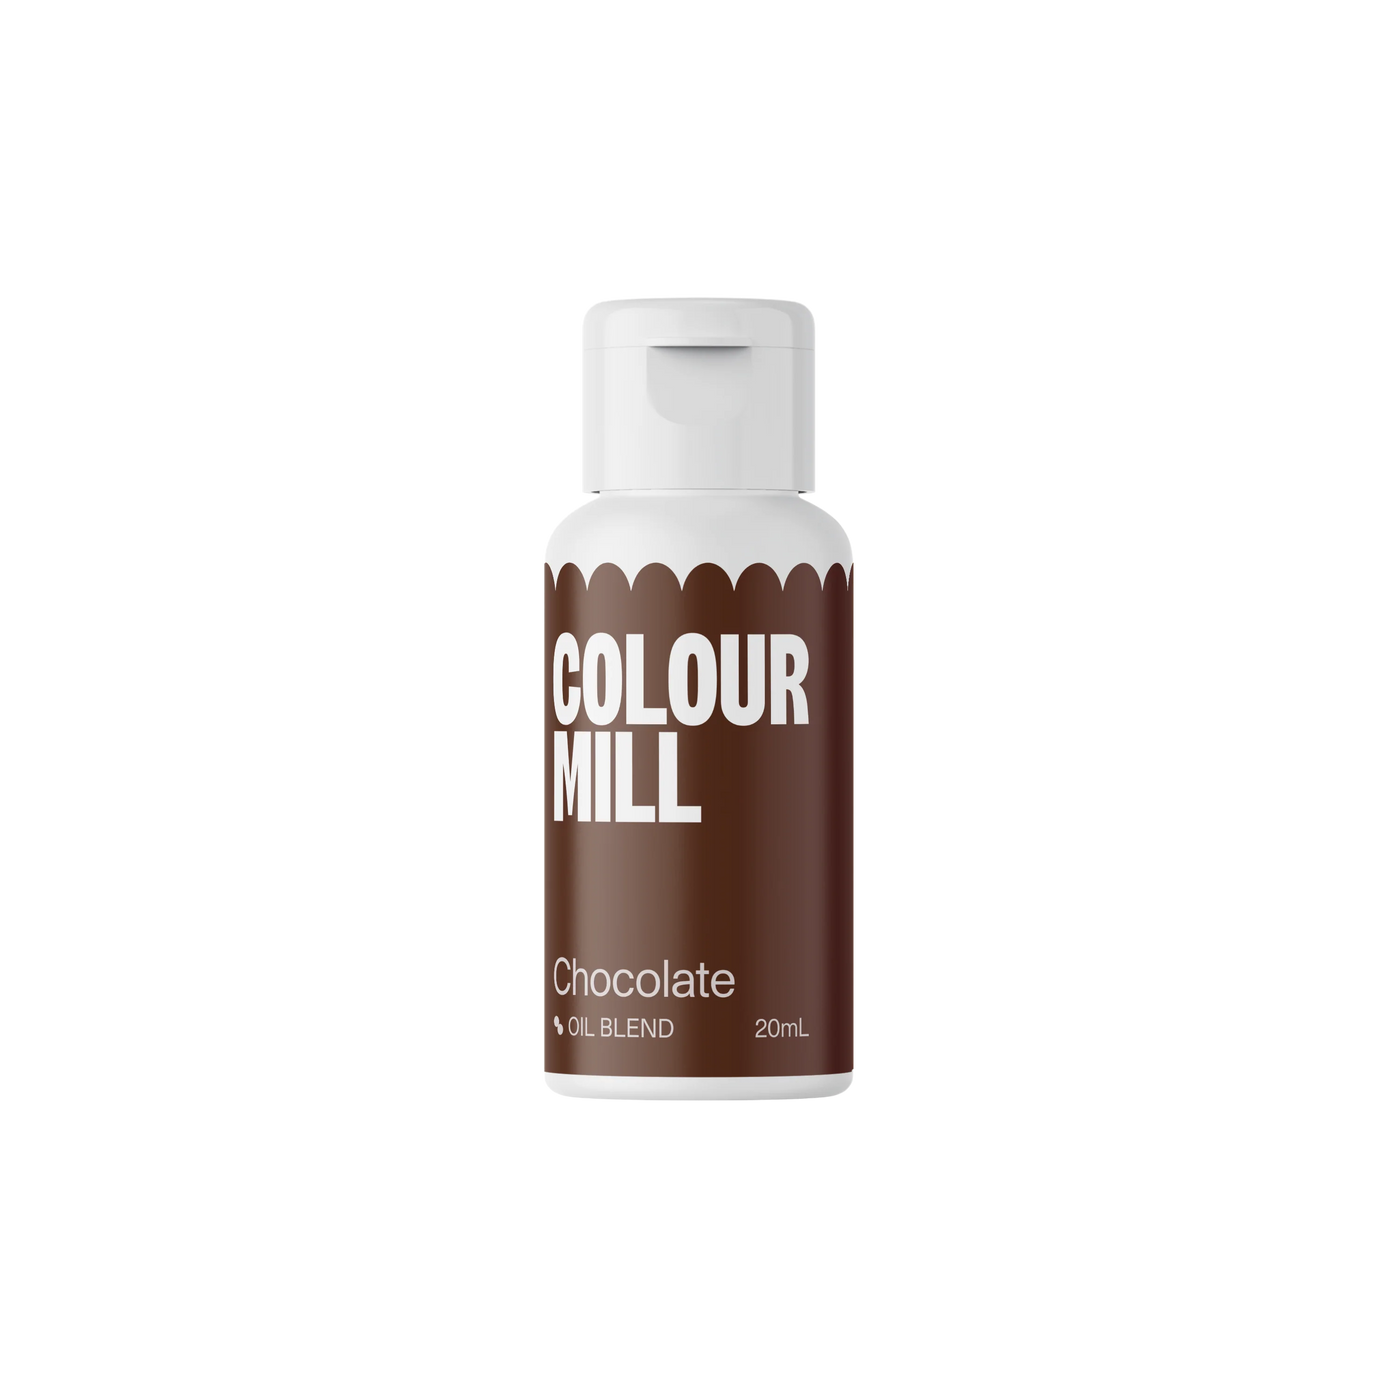 Χρώμα Πάστας Chocolate oil based Colour Mill 20 ml.